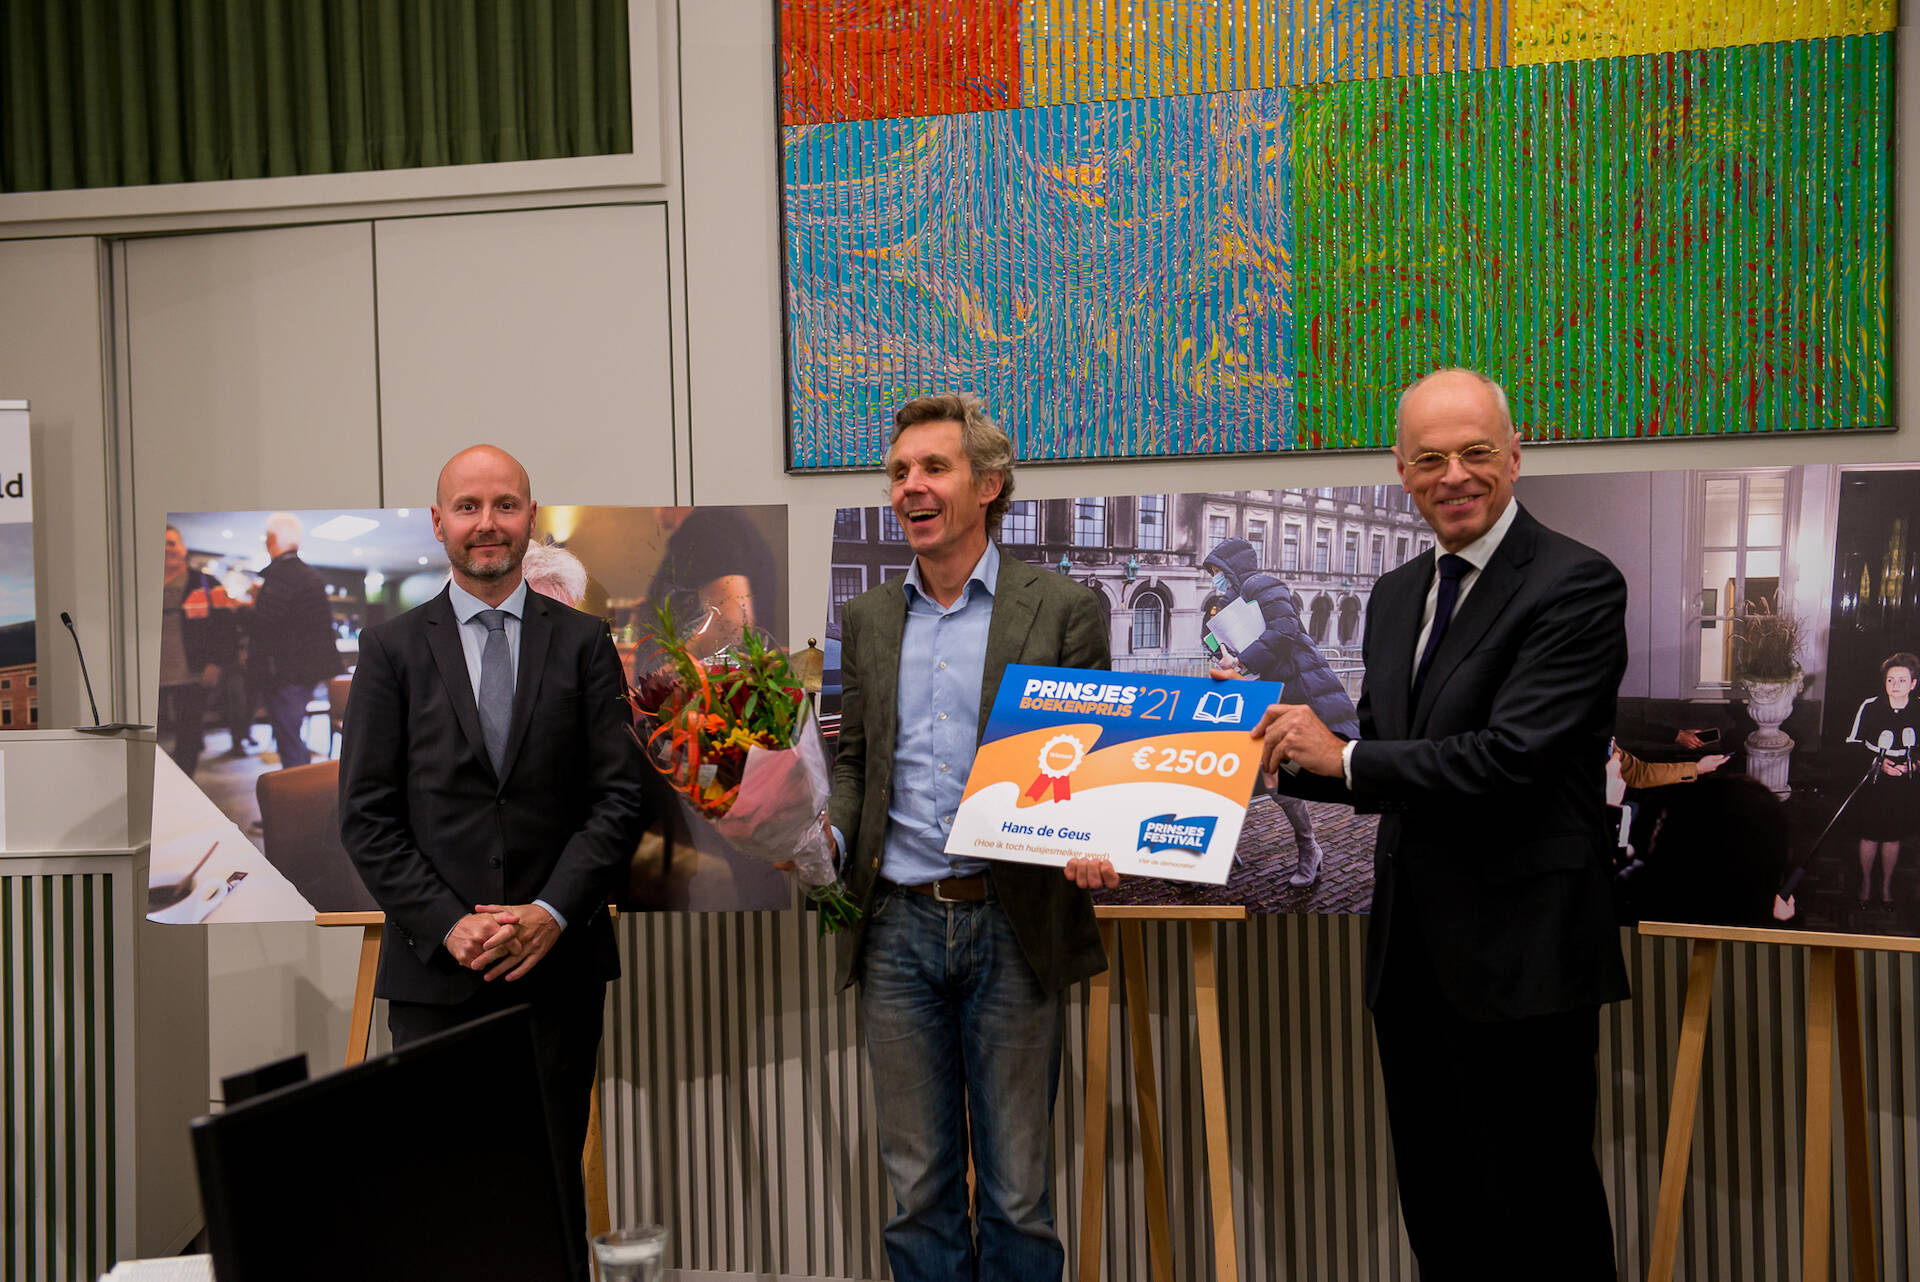 Schrijver Hans de Geus ontvangt de prijs uit handen van Eerste Kamervoorzitter Jan Anthonie Bruijn